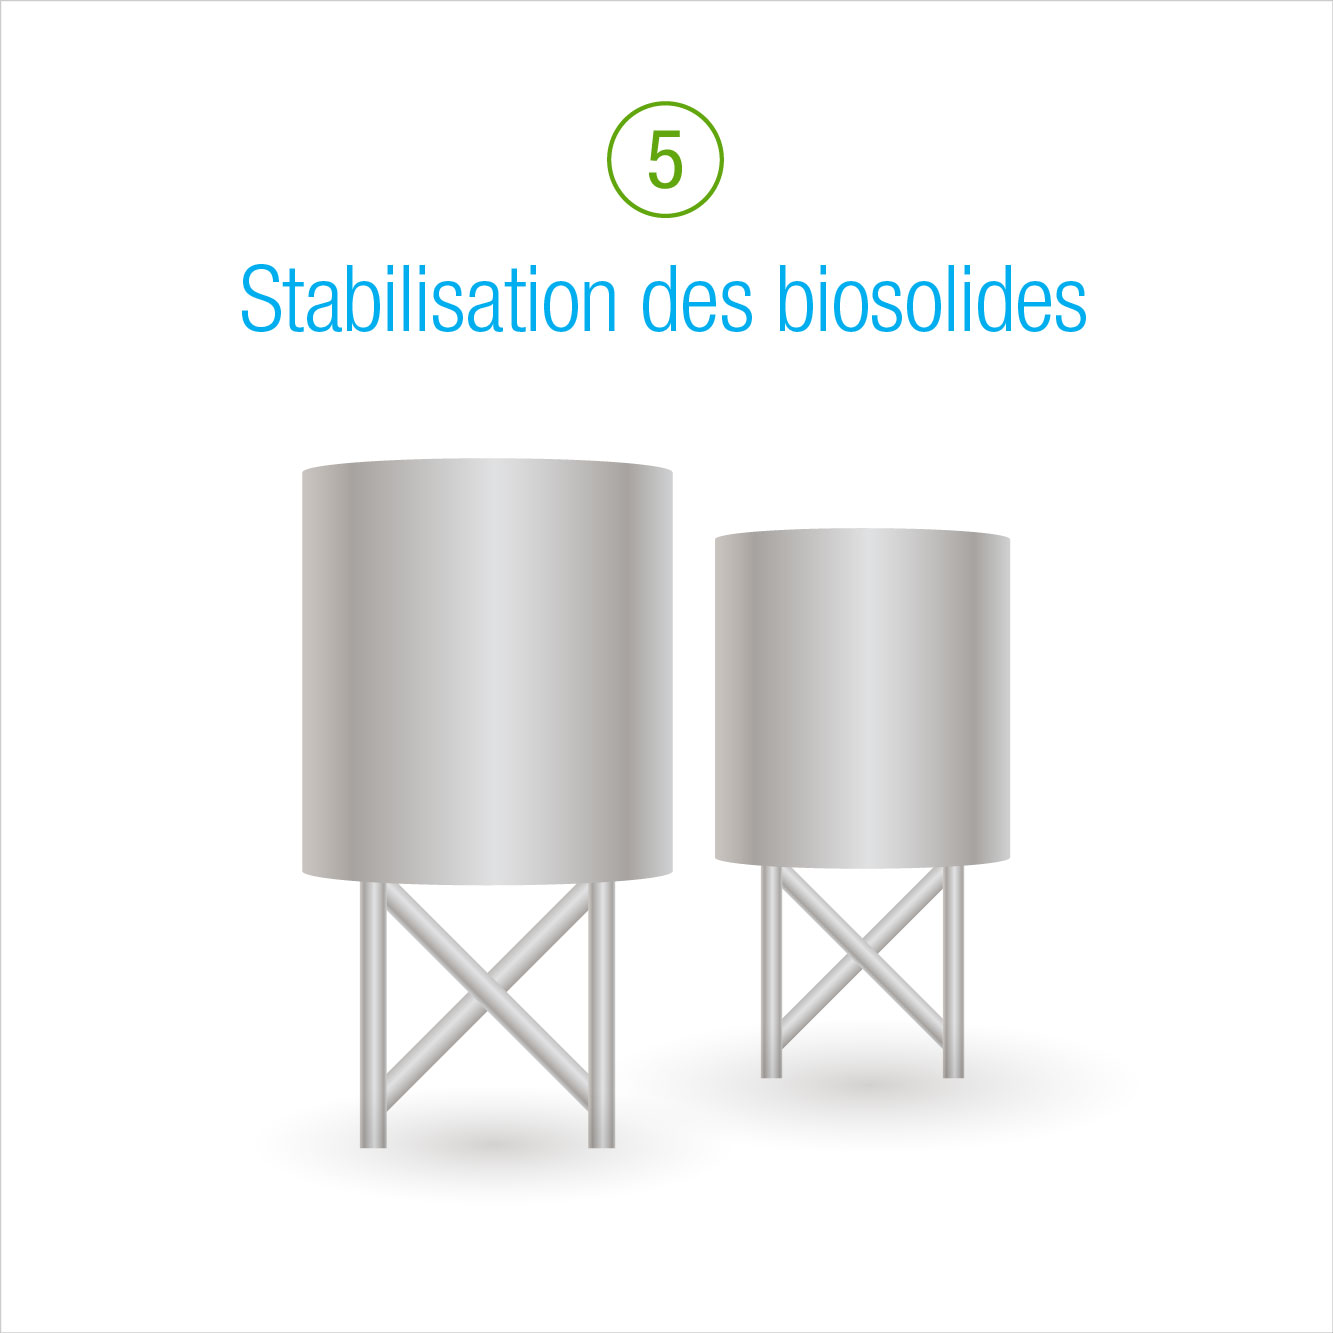 5: Stabilisation des biosolides